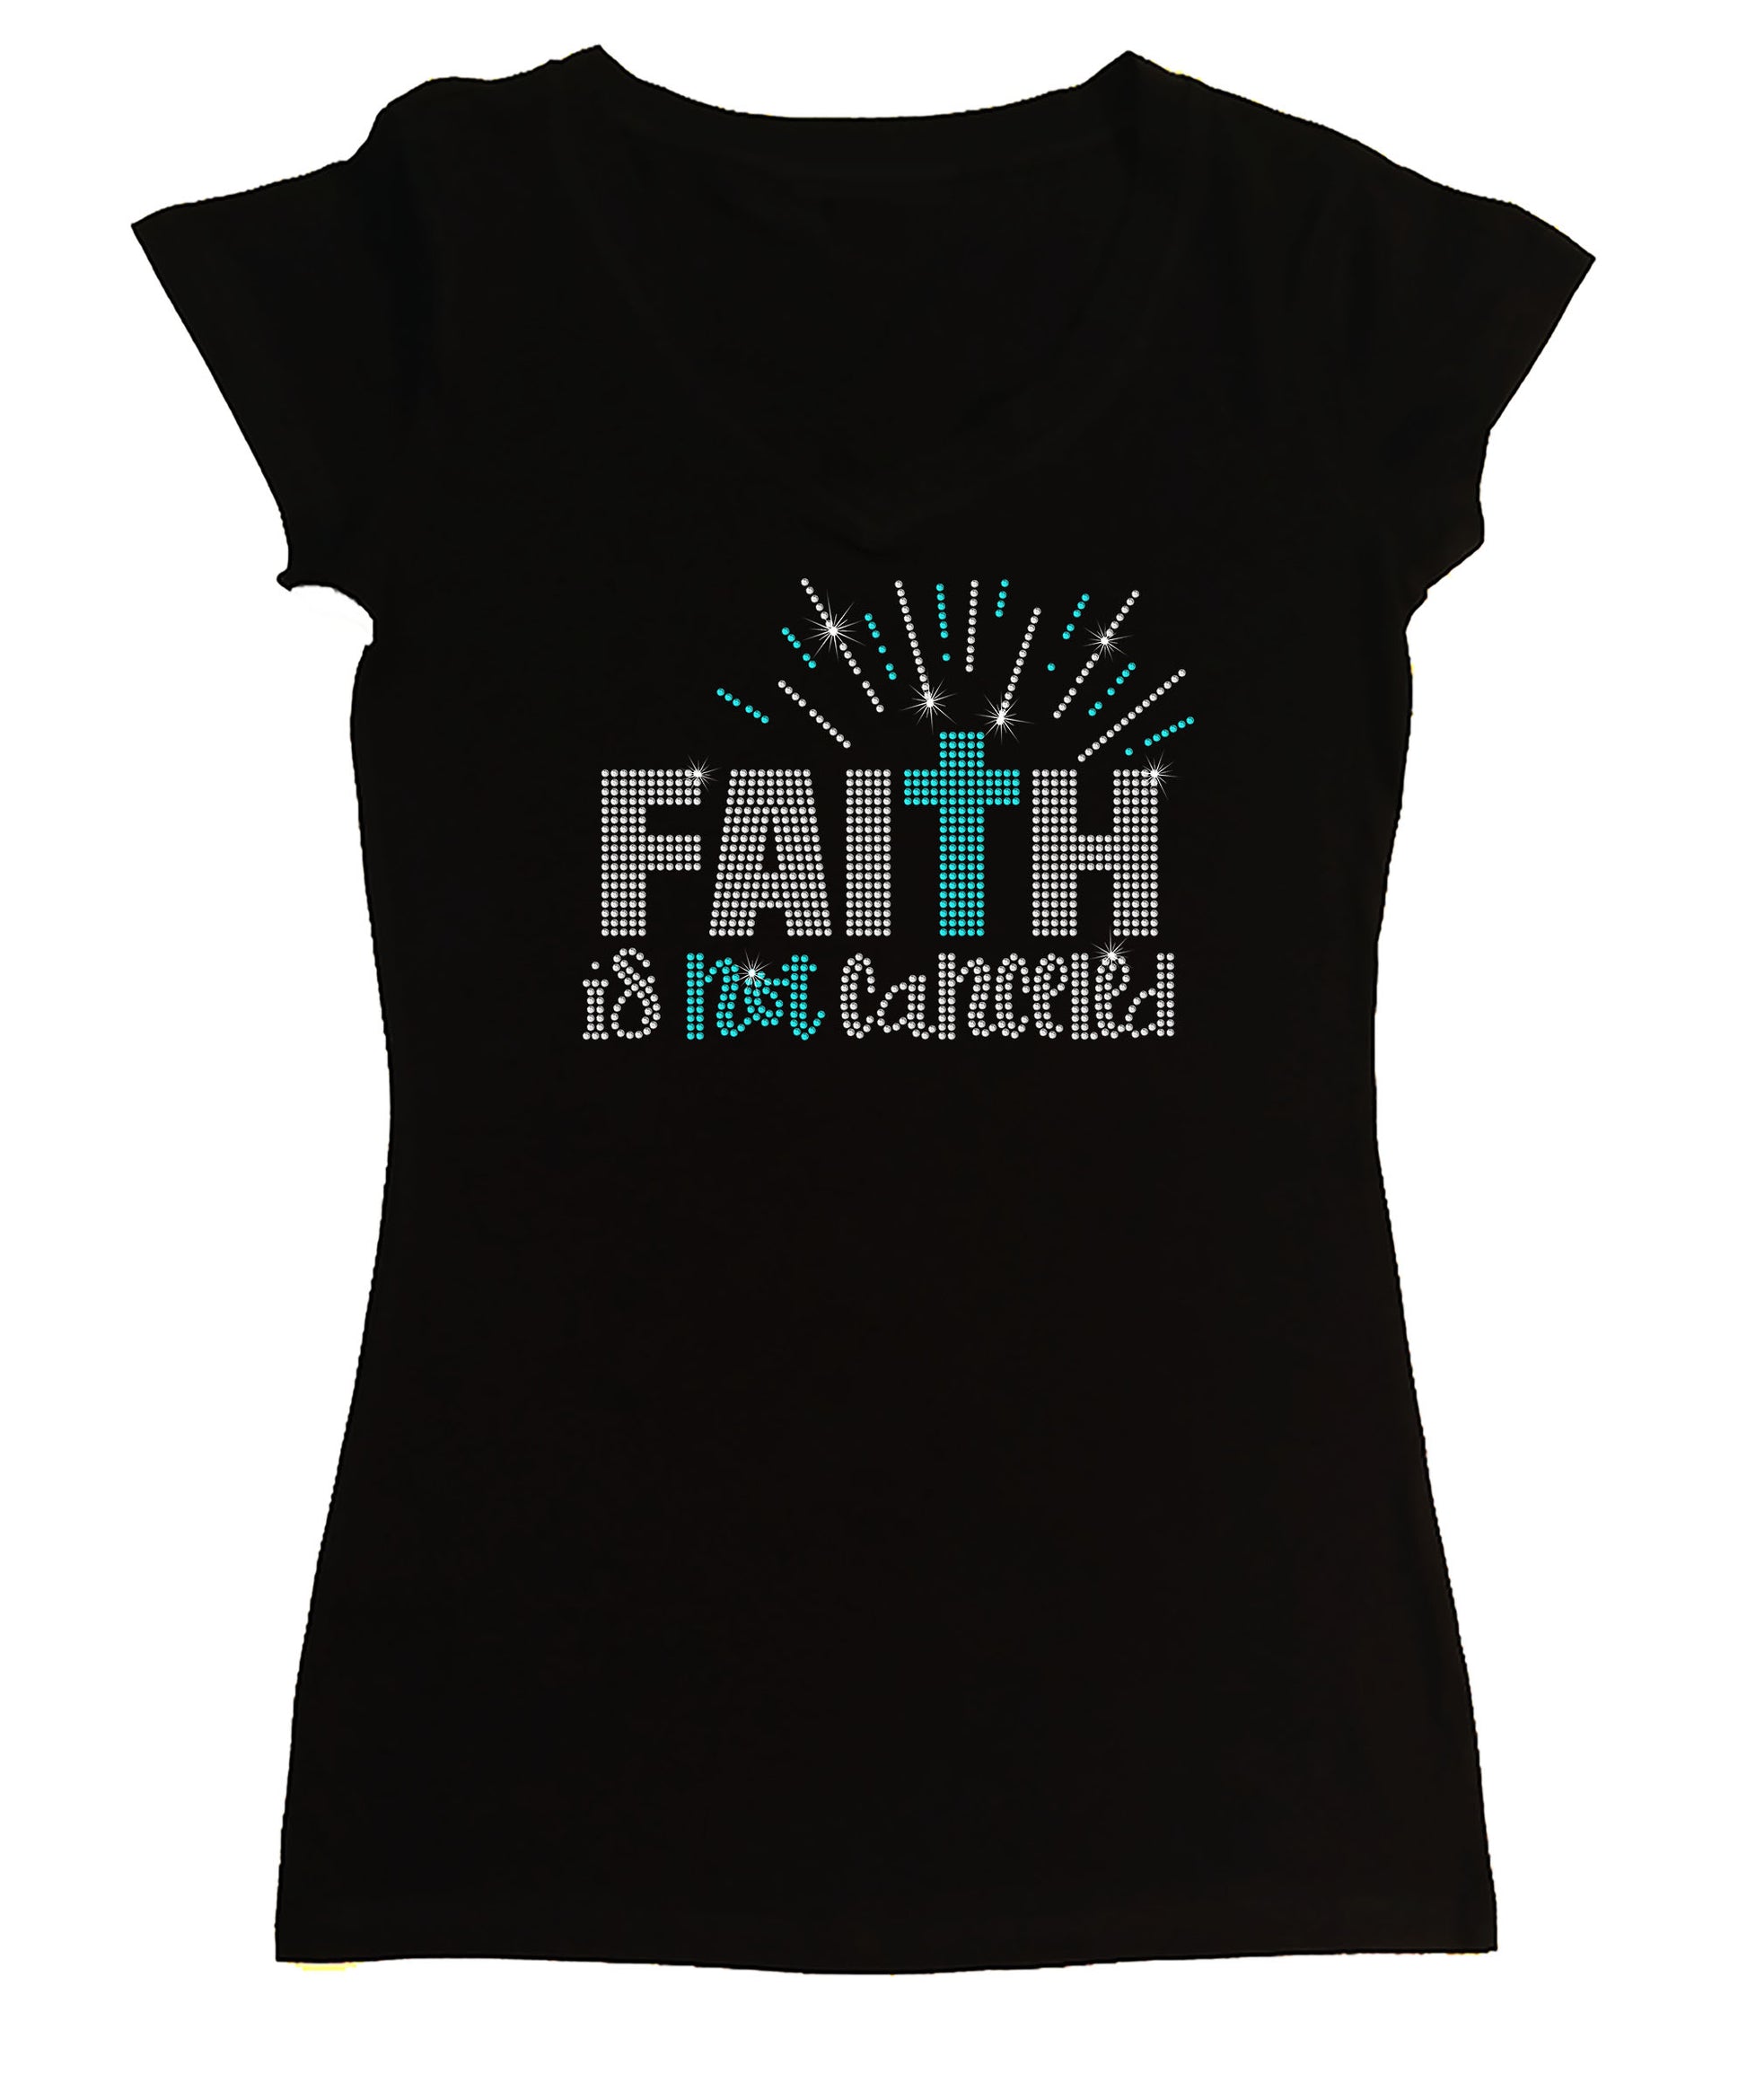 Faith is Not Canceled